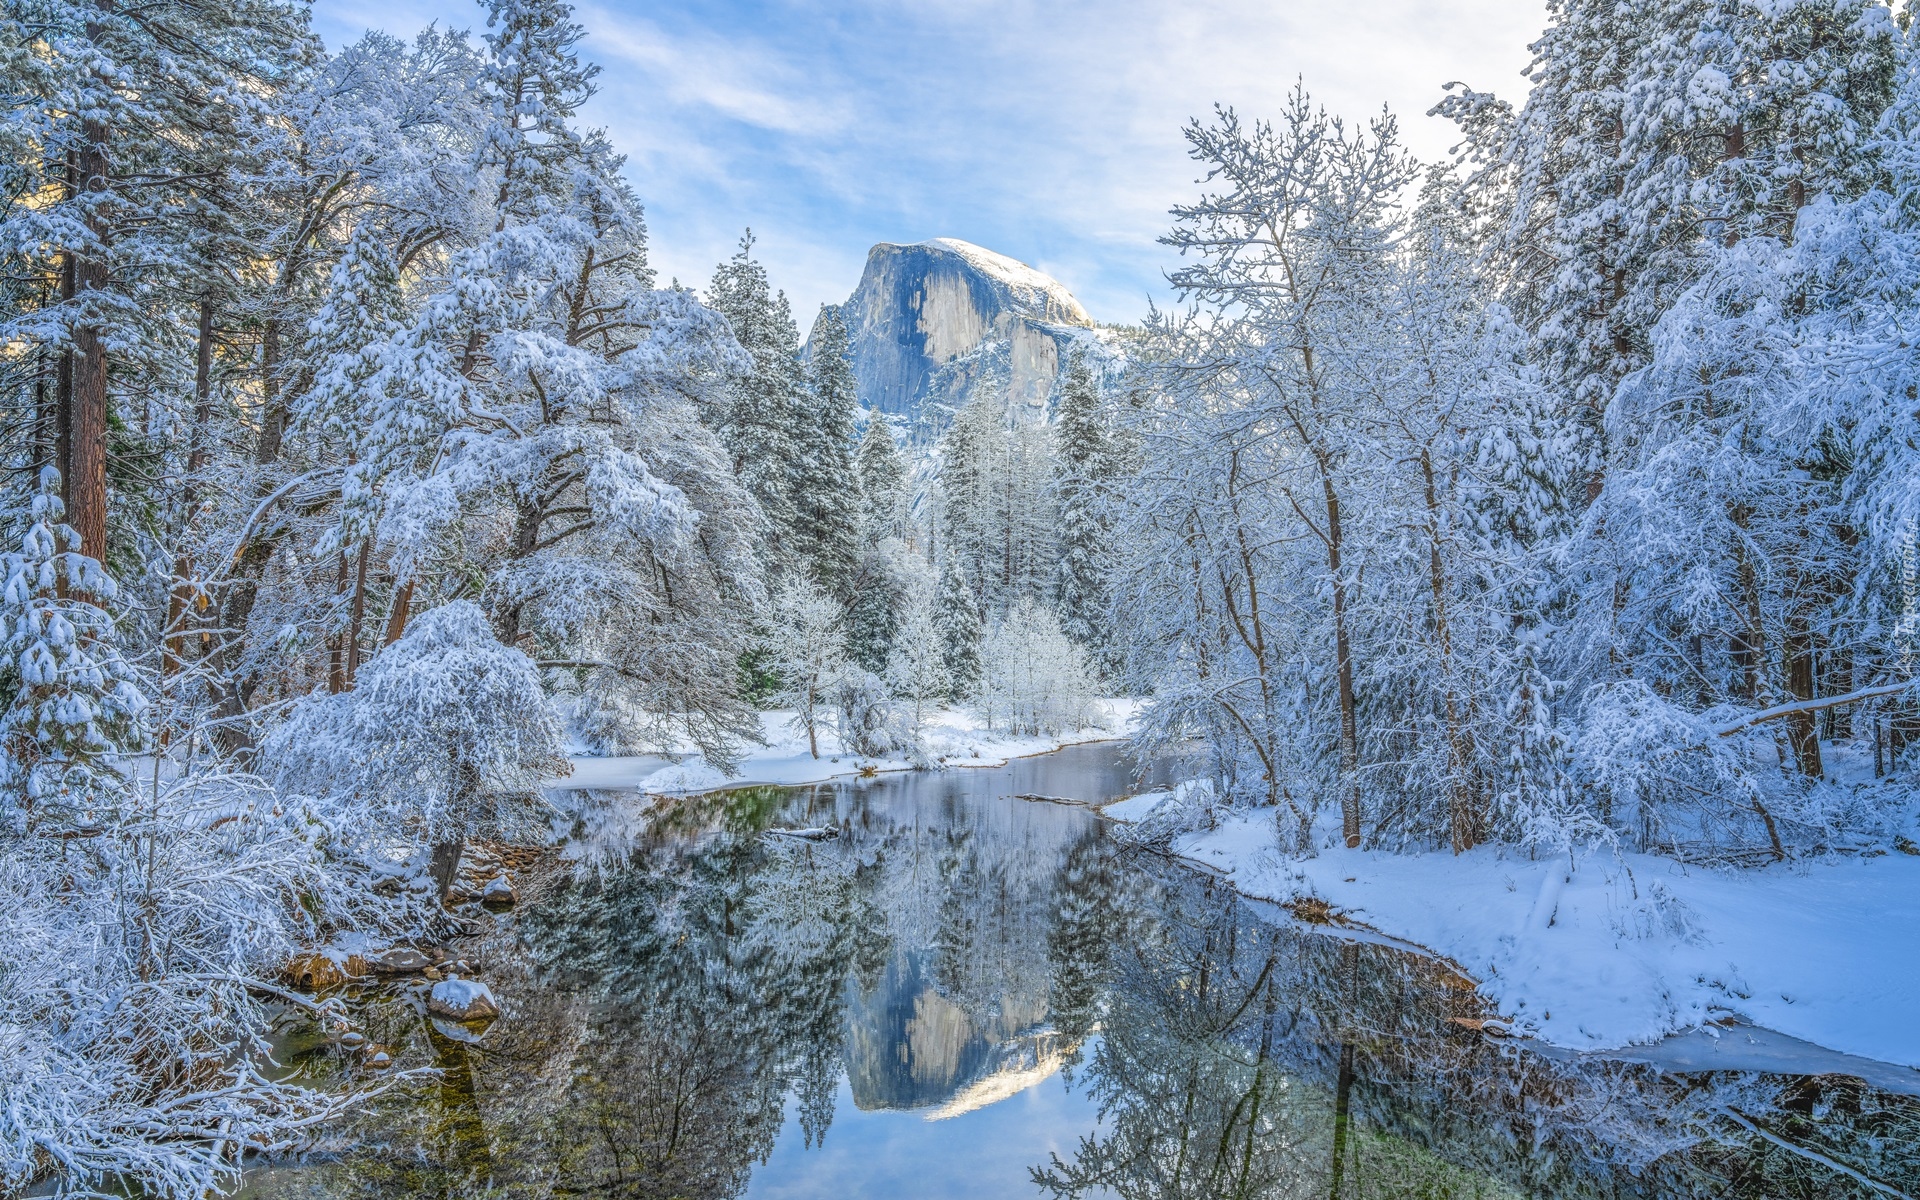 Park Narodowy Yosemite, Rzeka, Merced River, Góry, Góra Half Dome, Drzewa, Zima, Kalifornia, Stany Zjednoczone